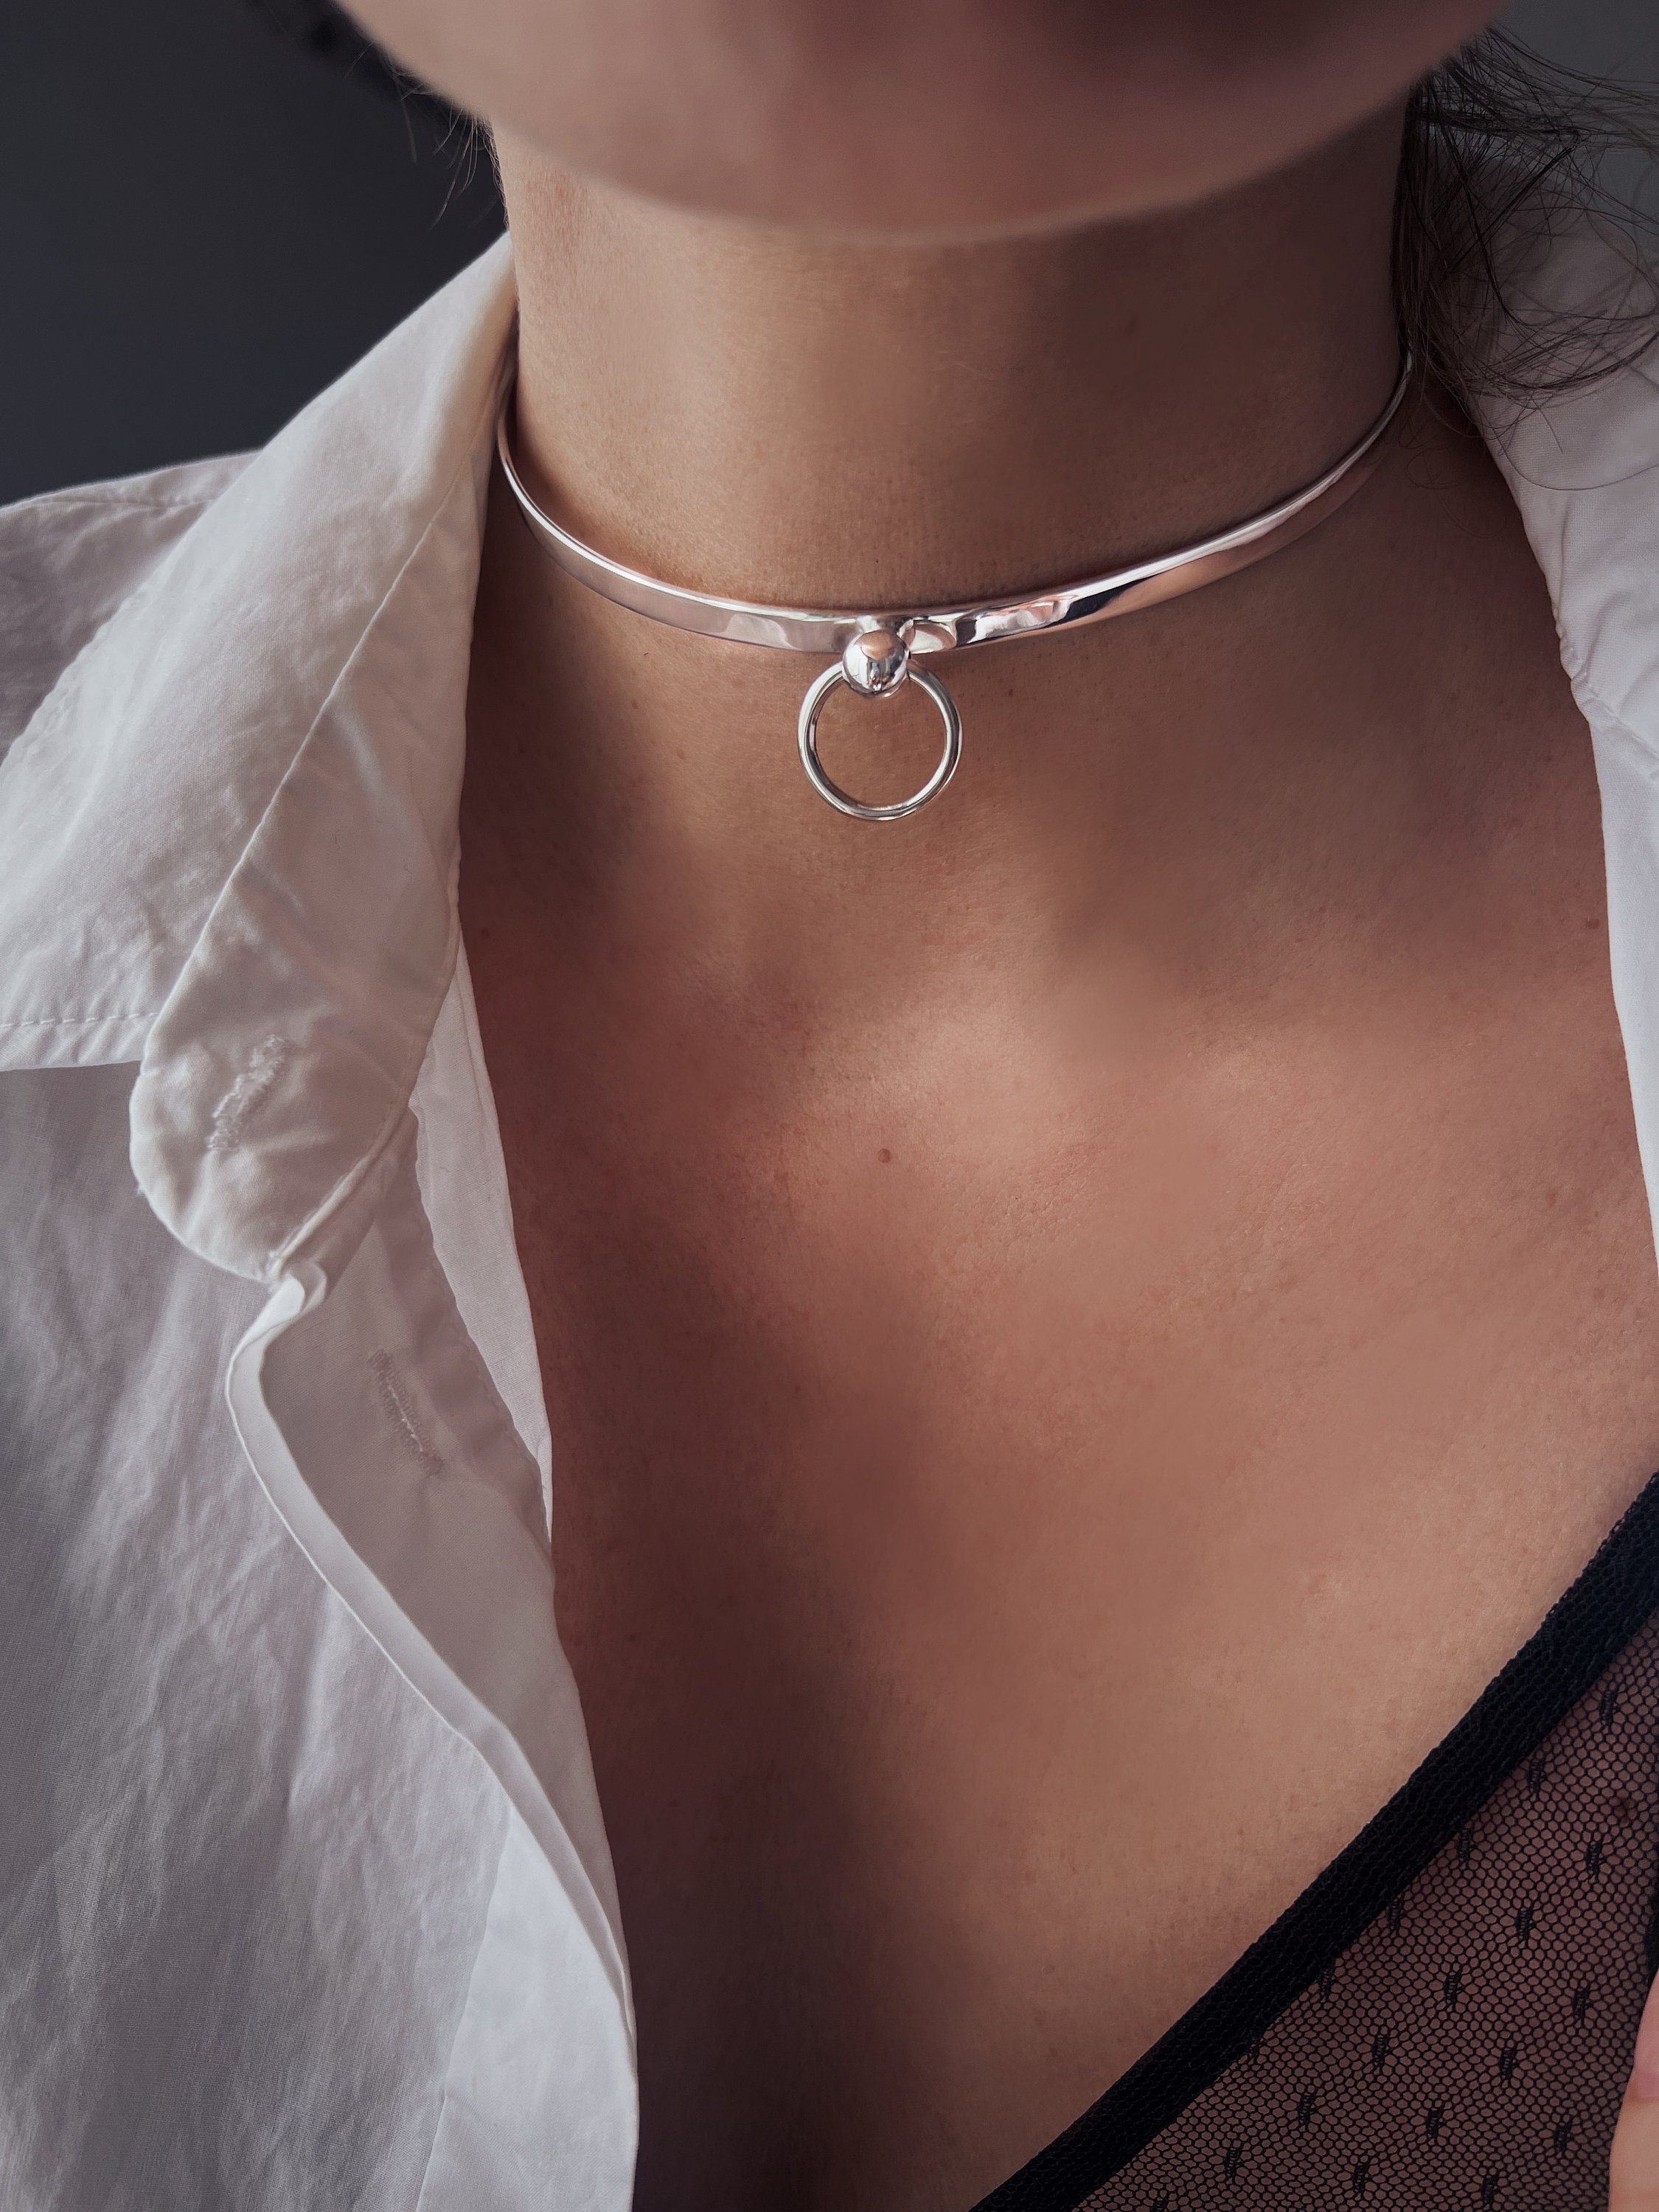 Guenloie Diamante Choker Necklace in Silver | Showpo USA